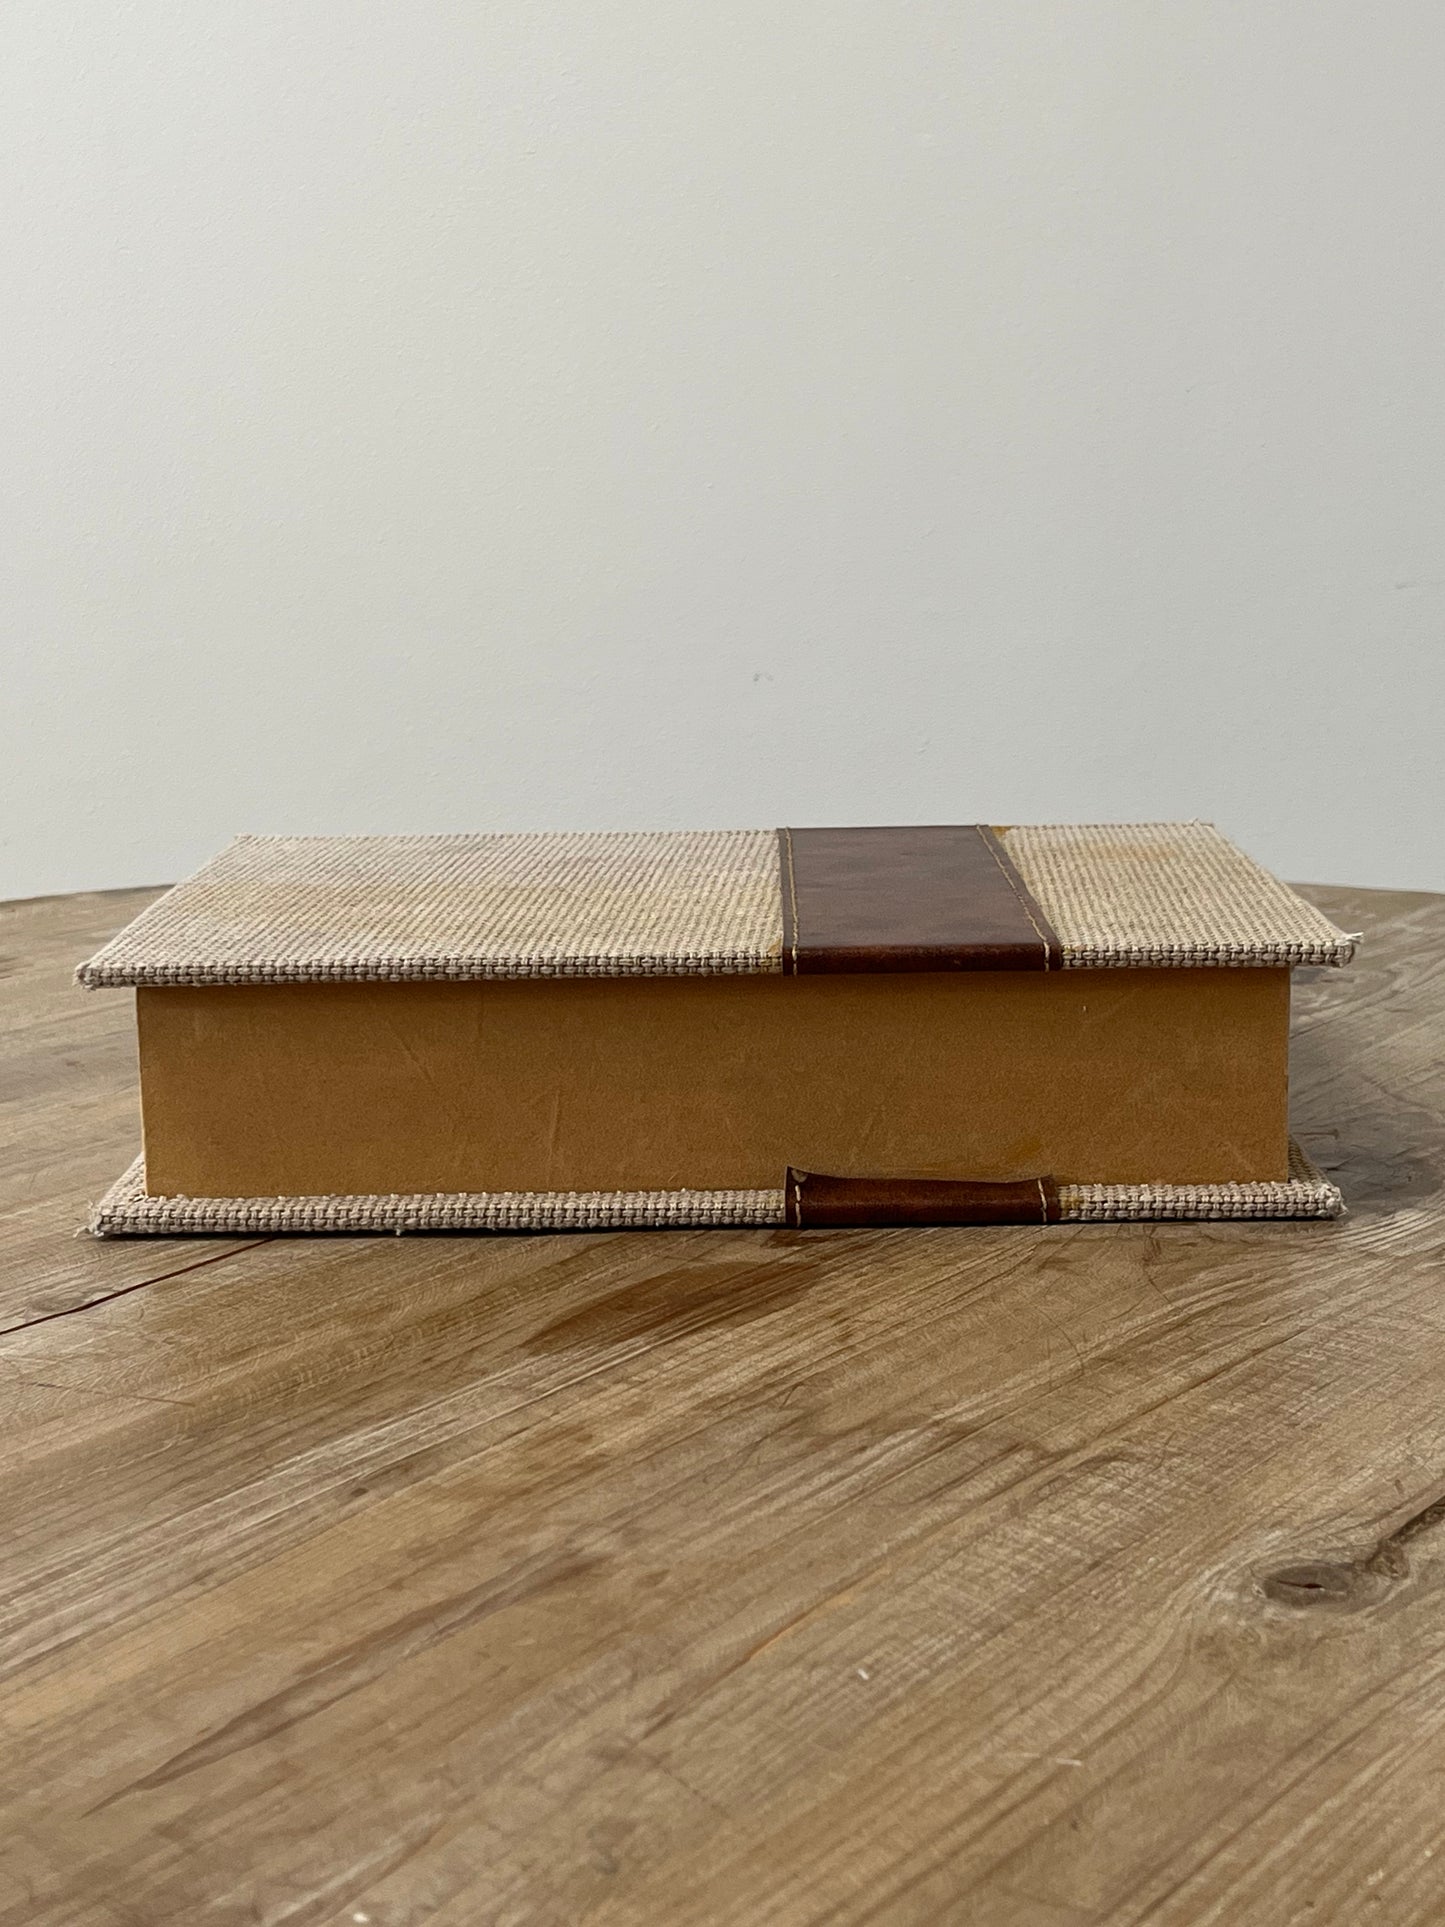 Beige Decorative Book Box